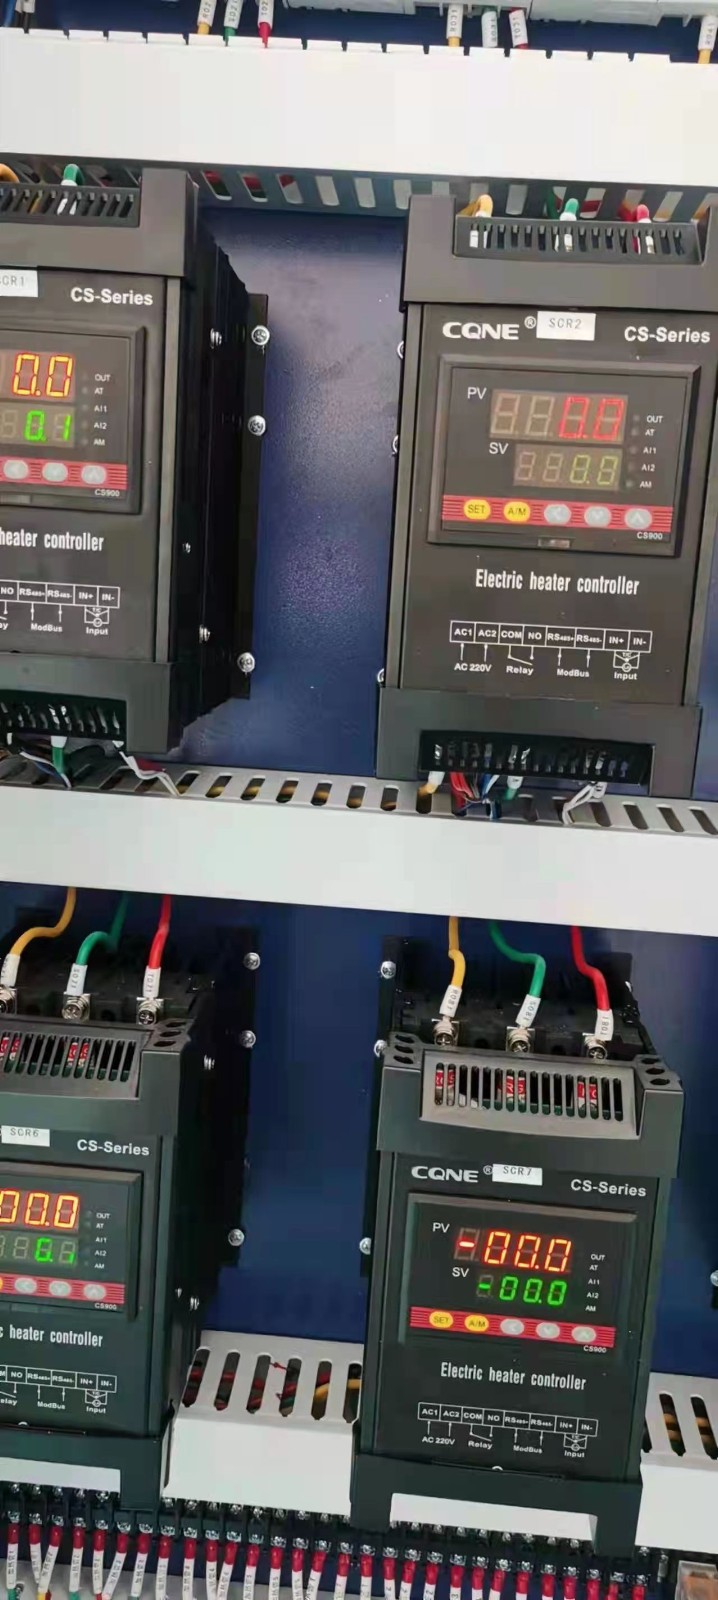 电力调整器是一种能够控制电加热设备的电气设备